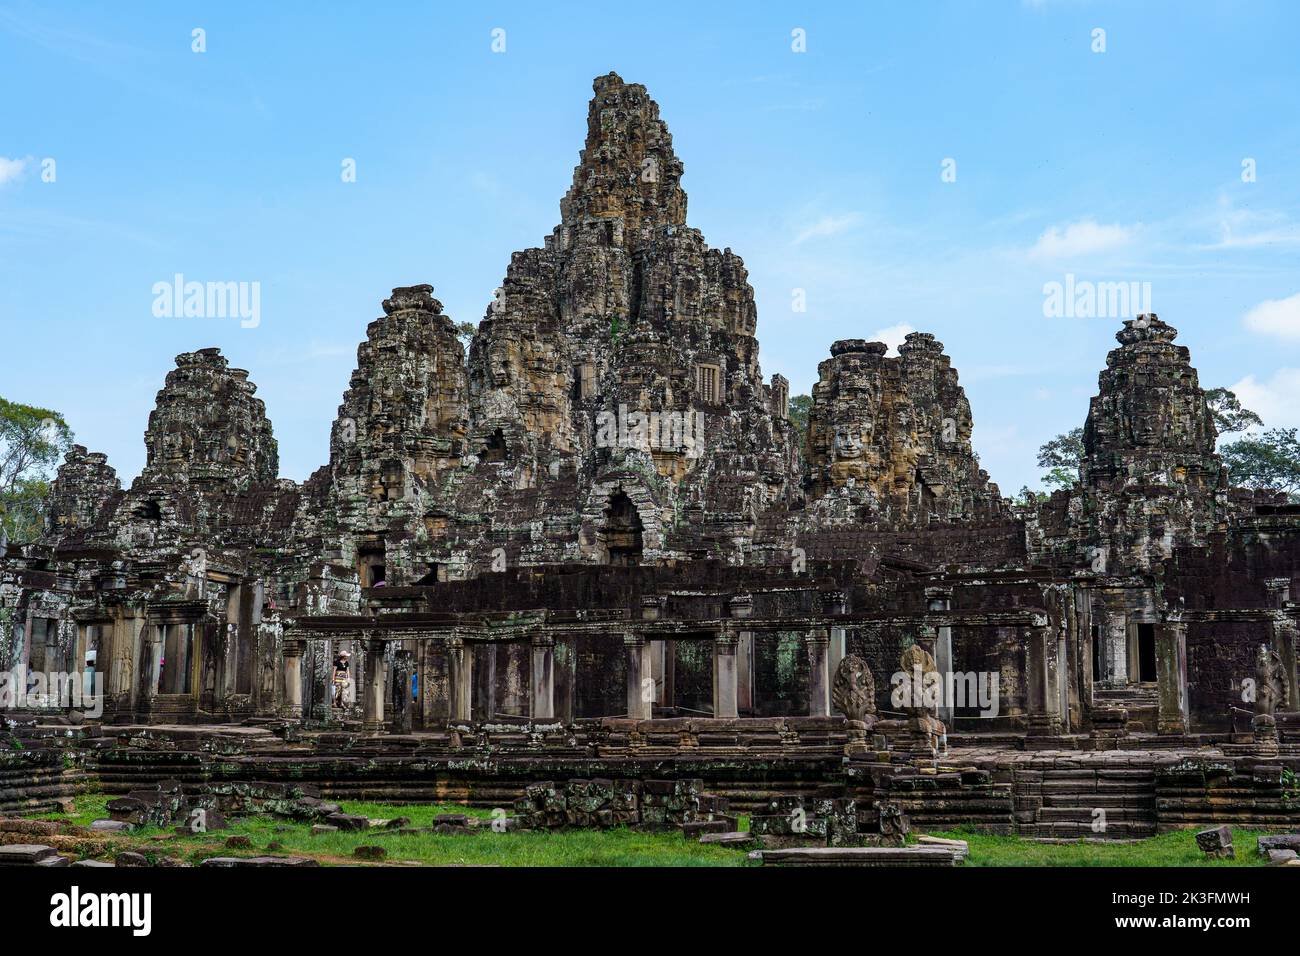 Camboya. Siem Riep. El parque arqueológico de Angkor. El templo de Bayon templo hindú del siglo 12th Foto de stock